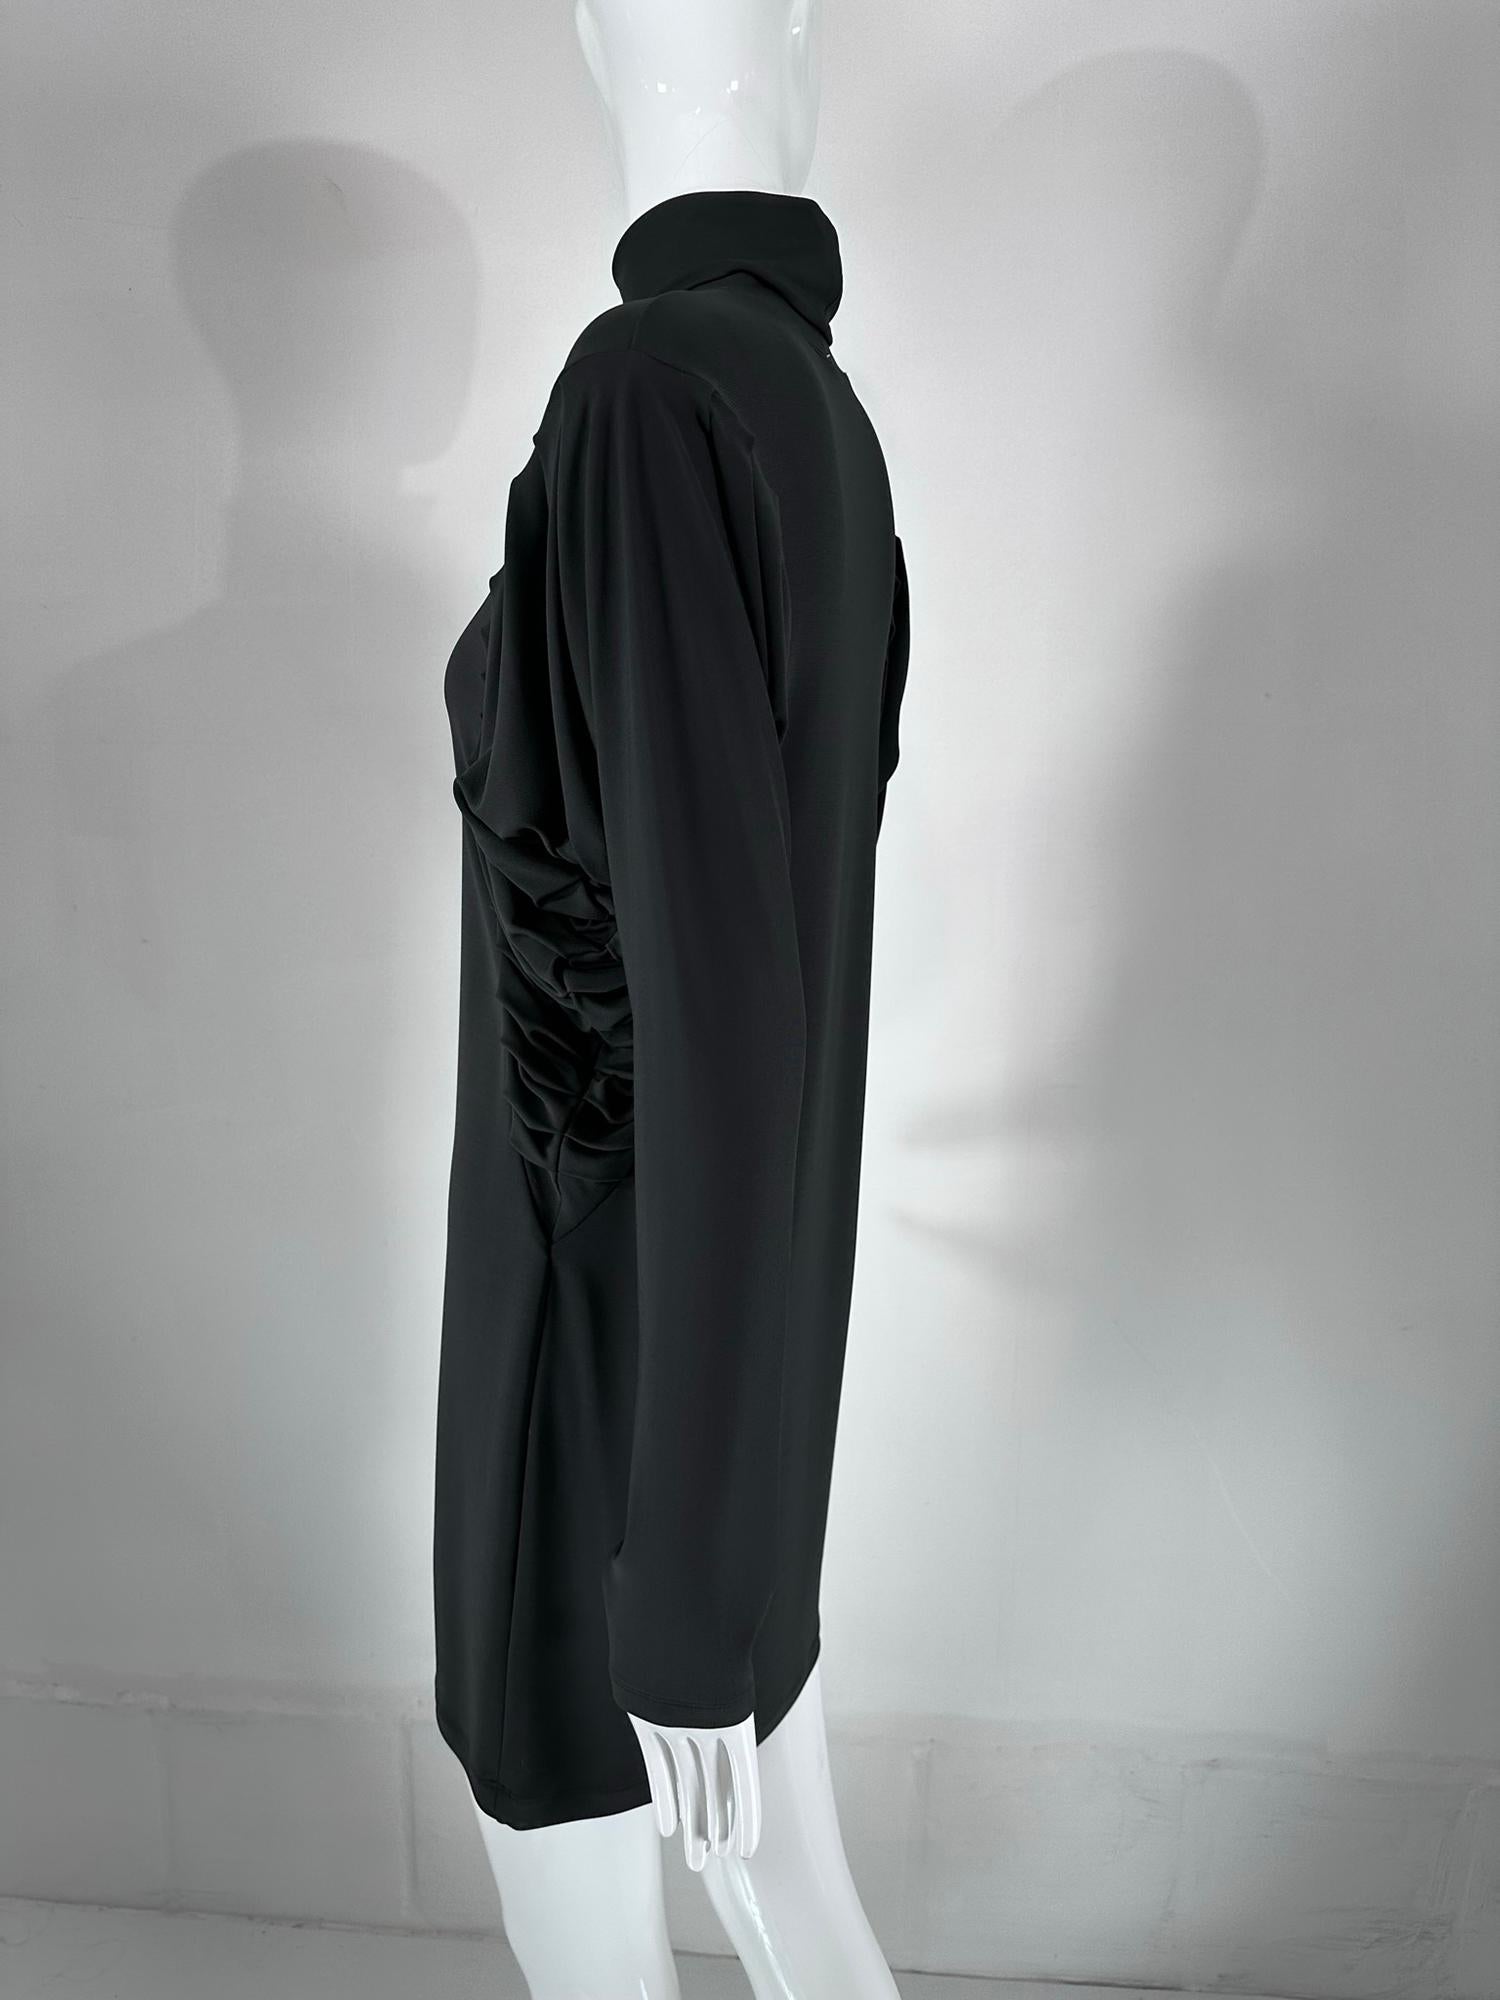 Fendi Silky Black Jersey Pleated Bat Wing Turtle Neck Dress 40 For Sale 7